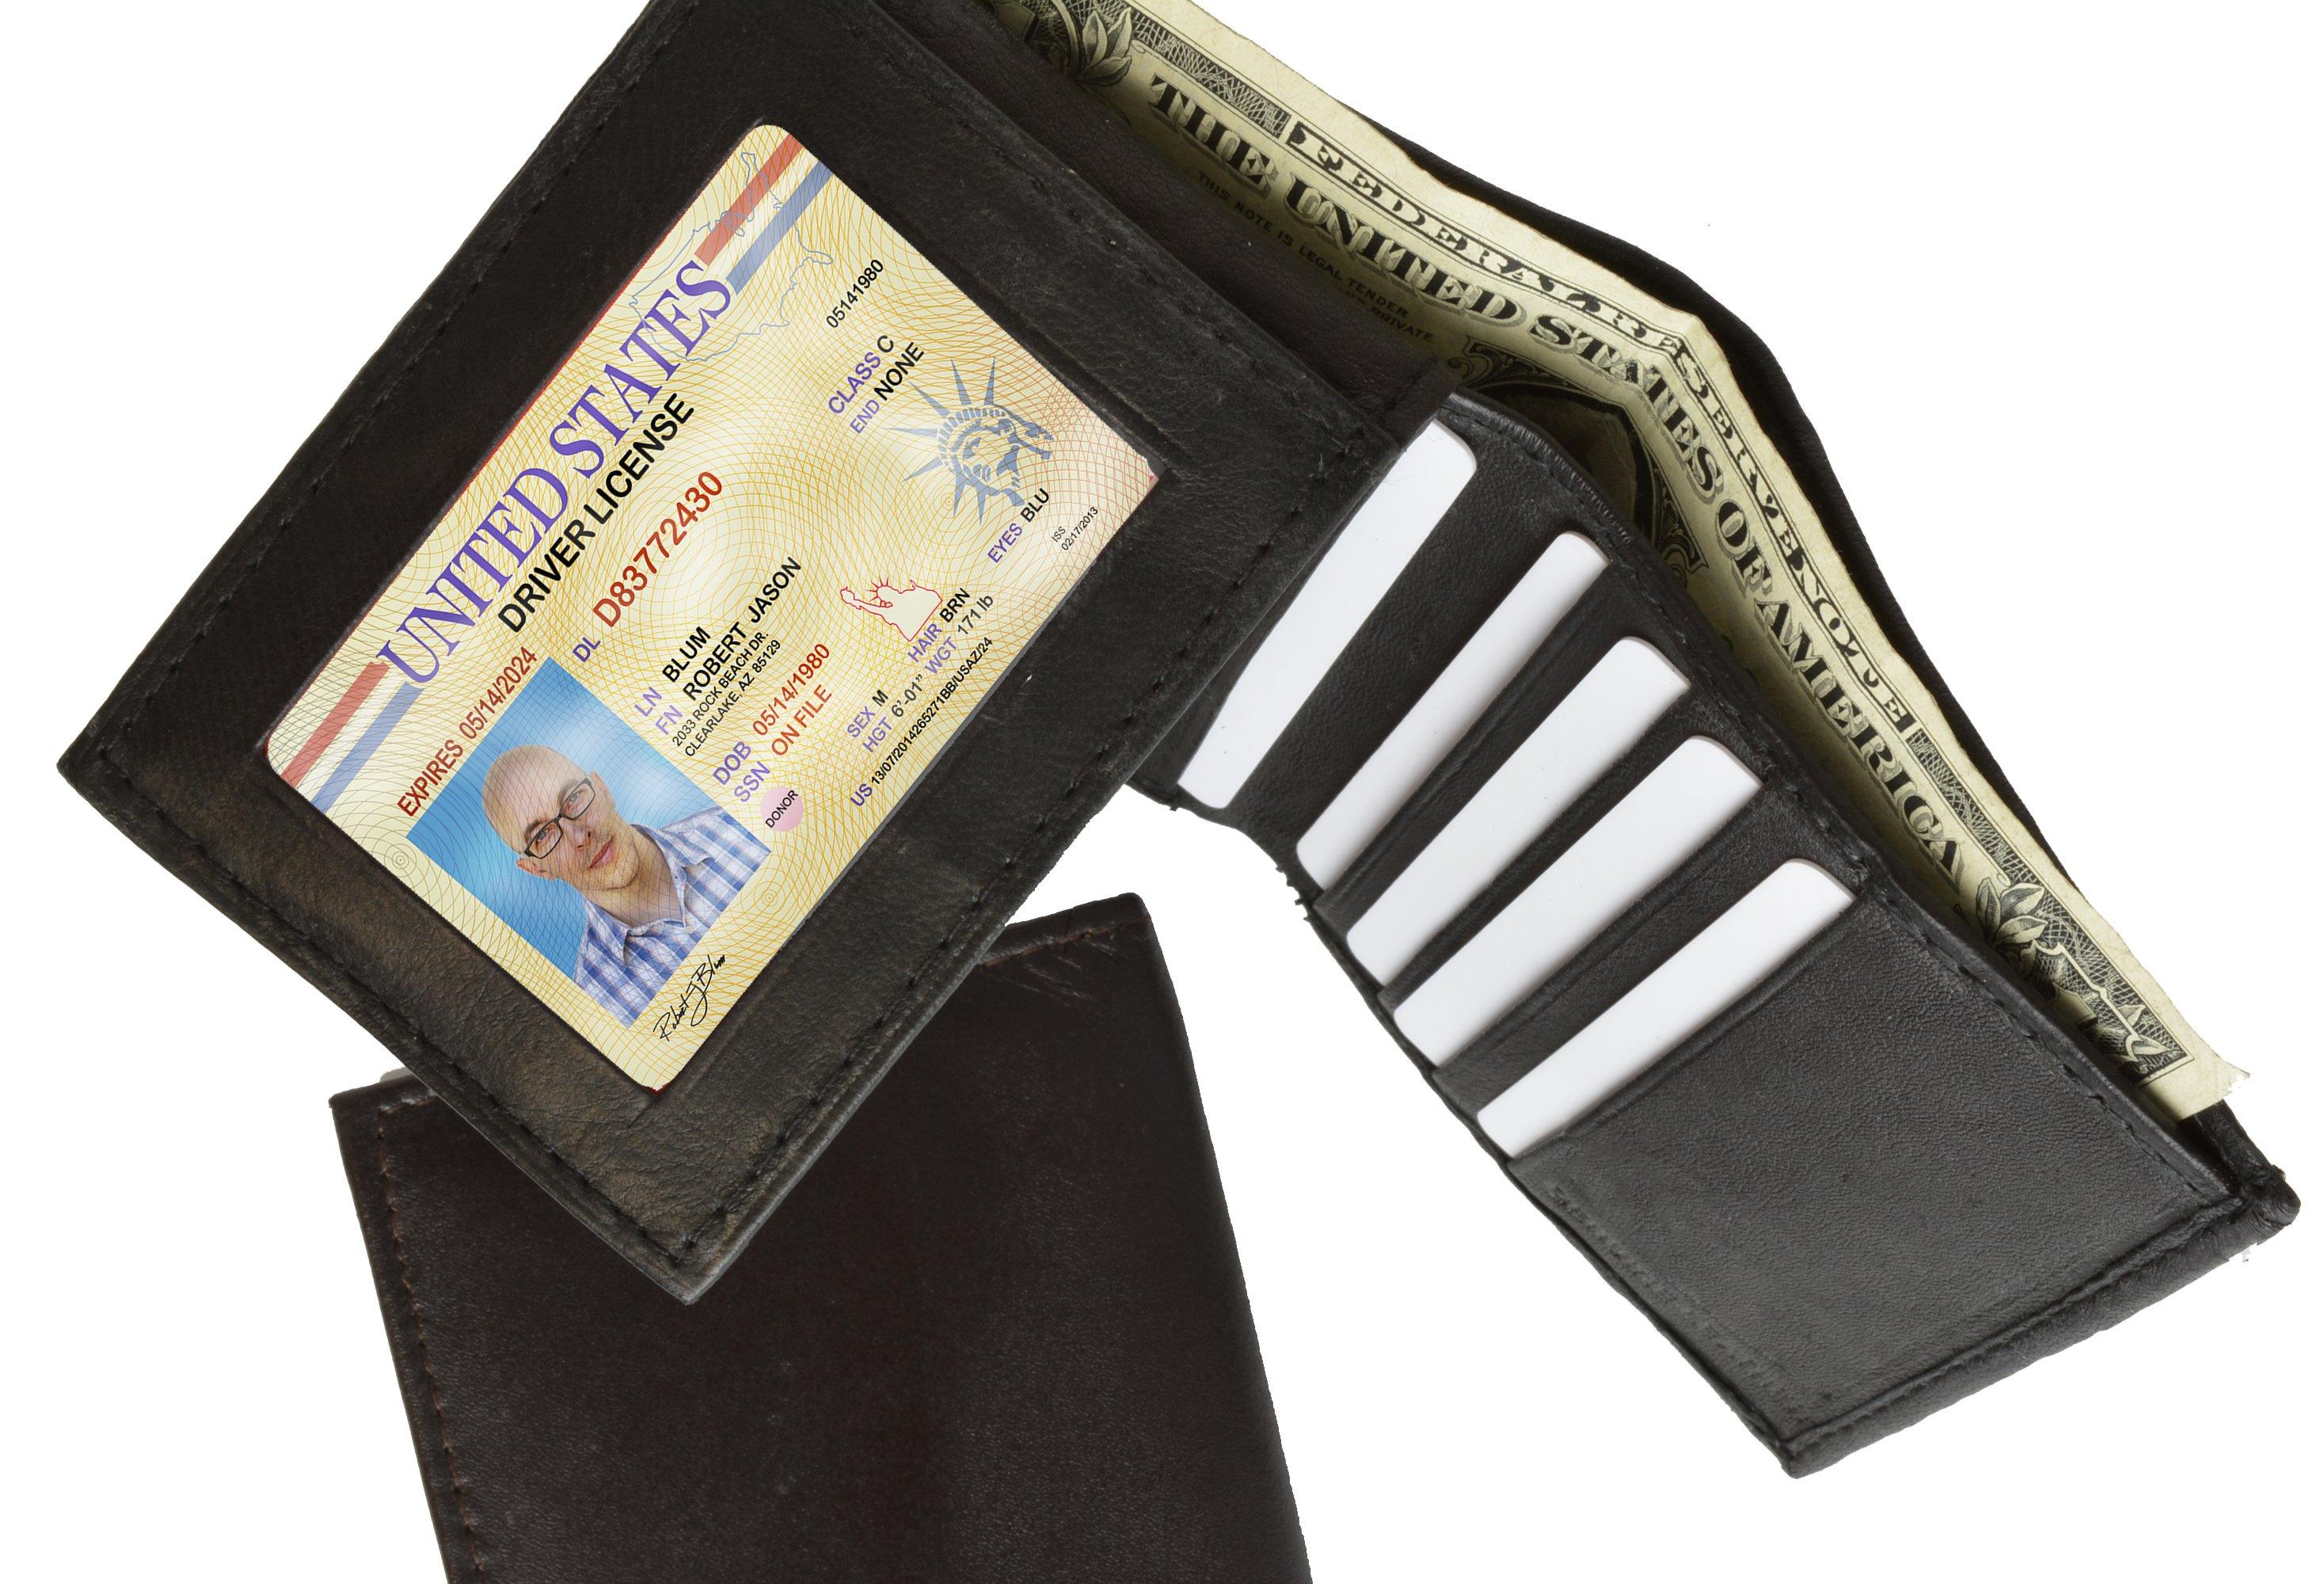 AFONiE Genuine Leather Men Bi-fold Wallet